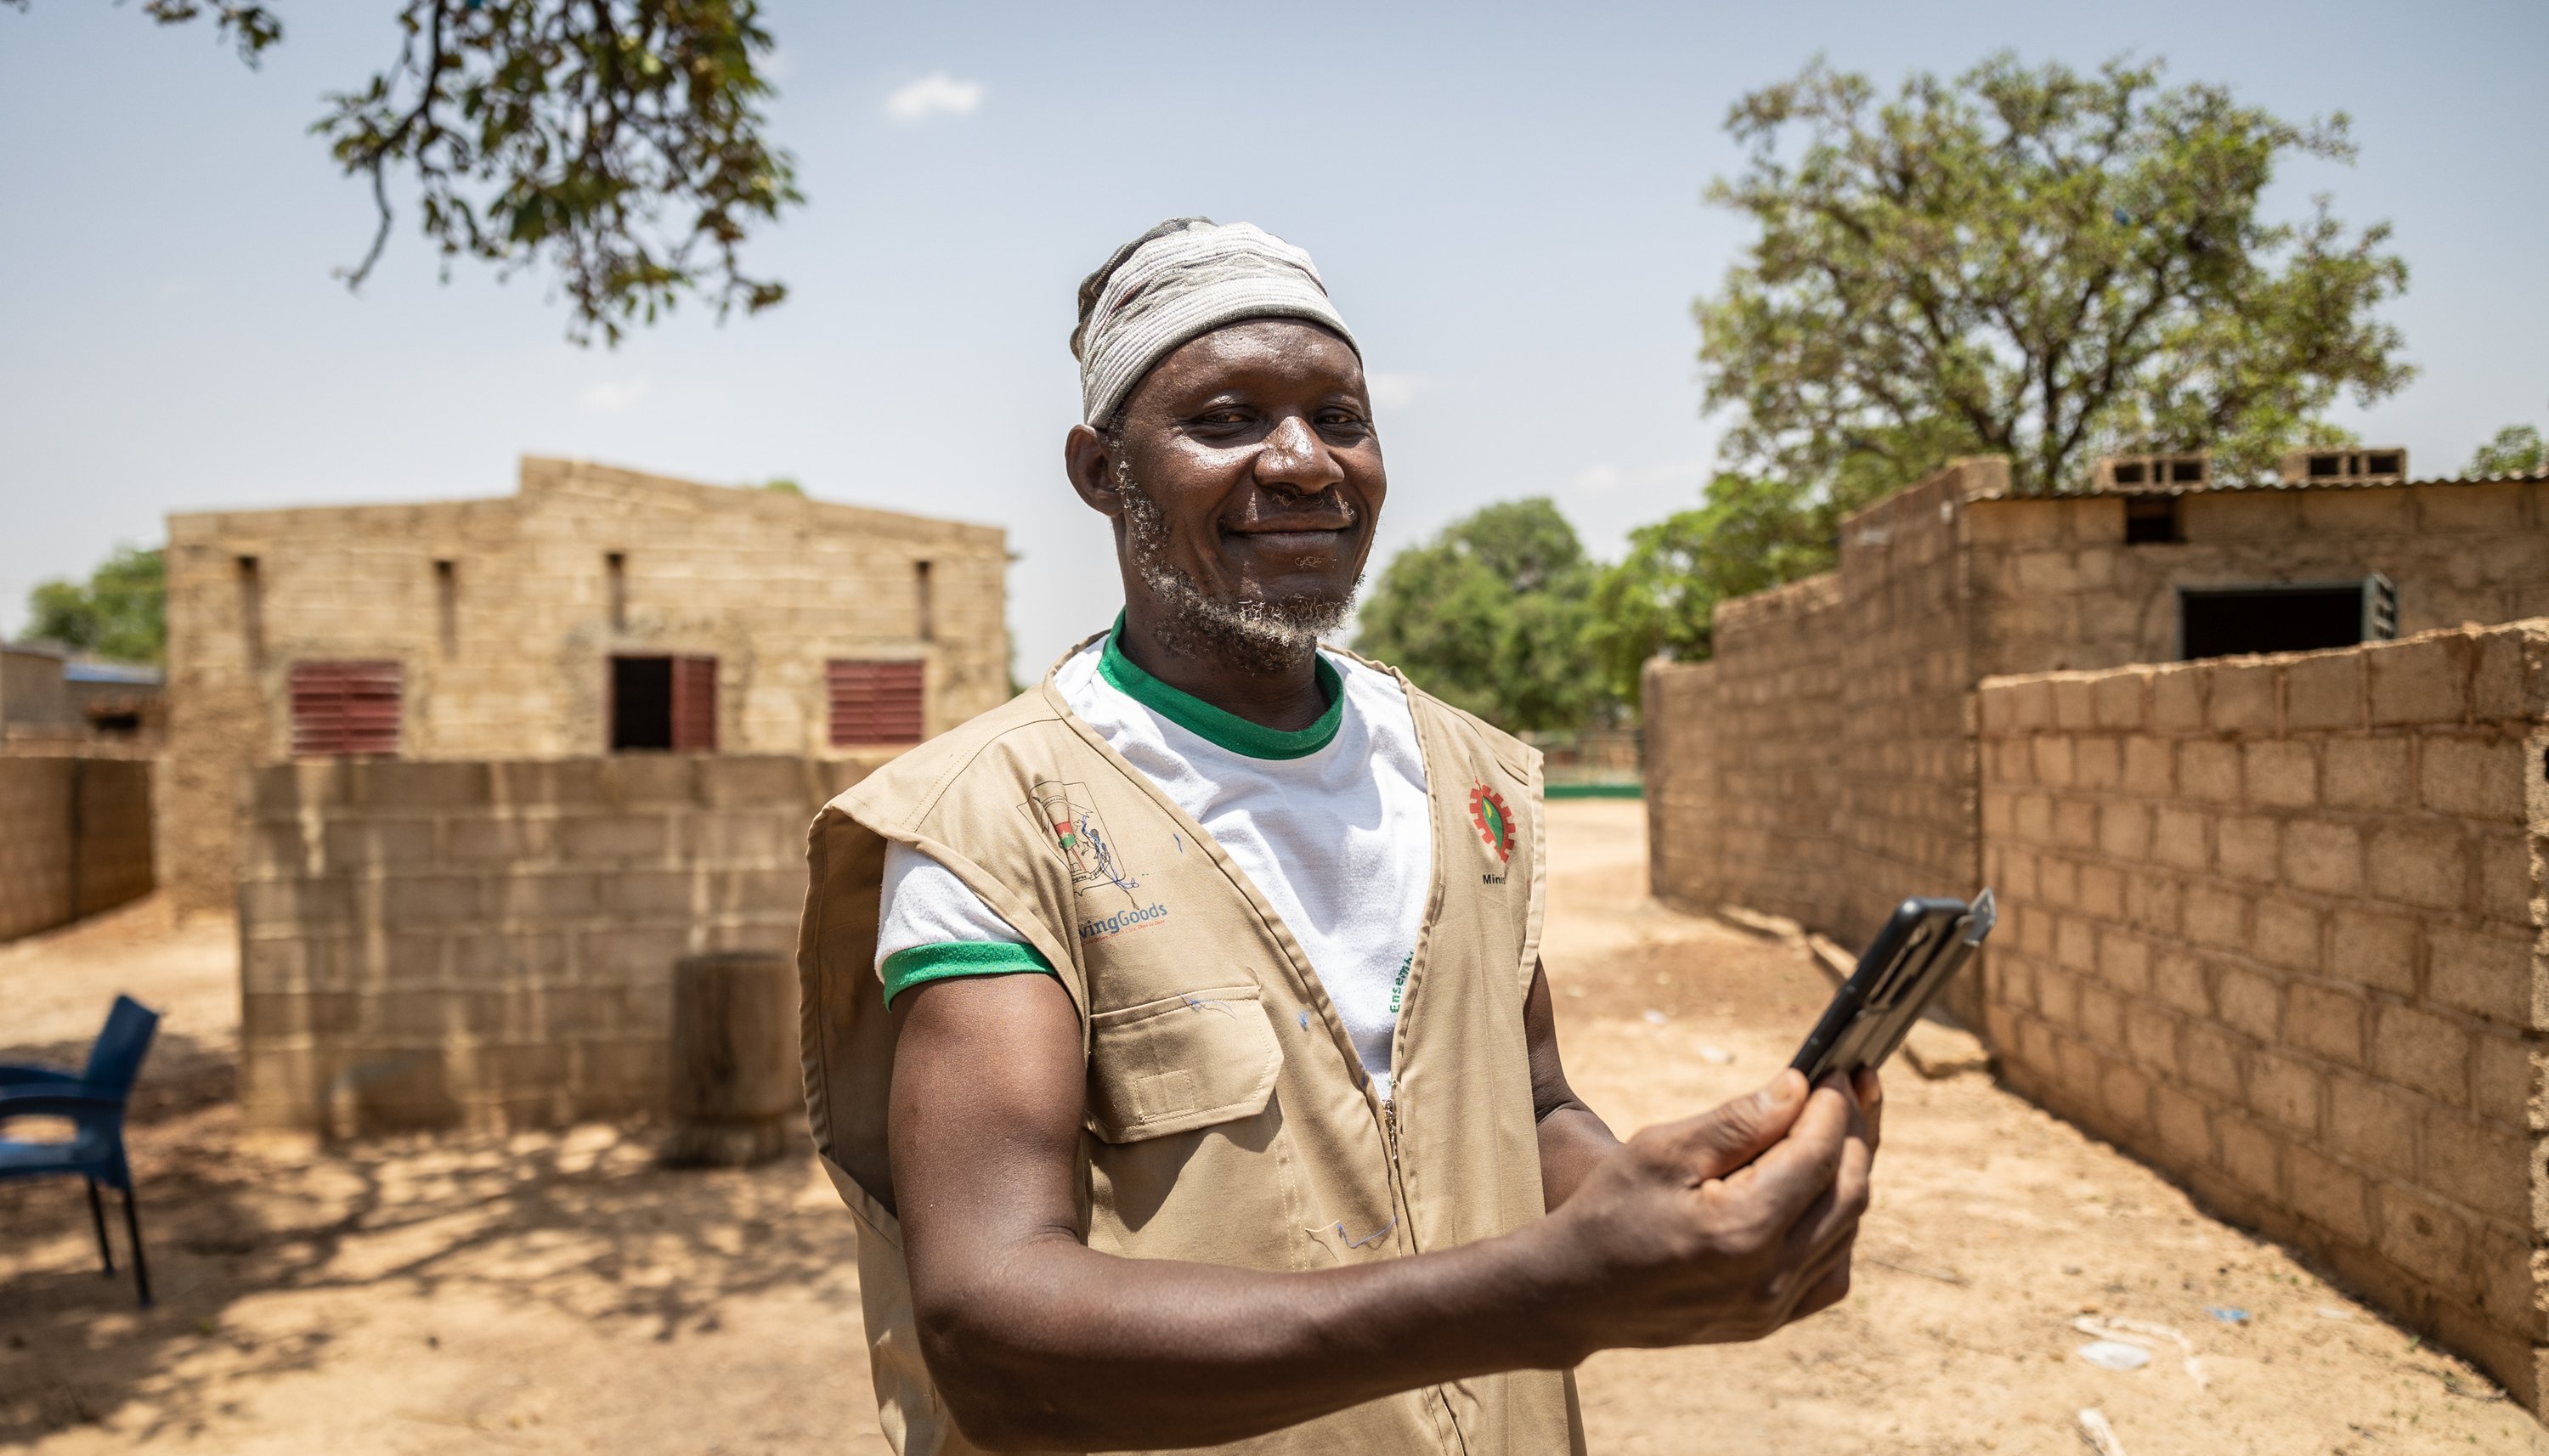 Read Au Burkina Faso, une application mobile remplace les dossiers papier et aide à transformer la santé communautaire by The Global Fund